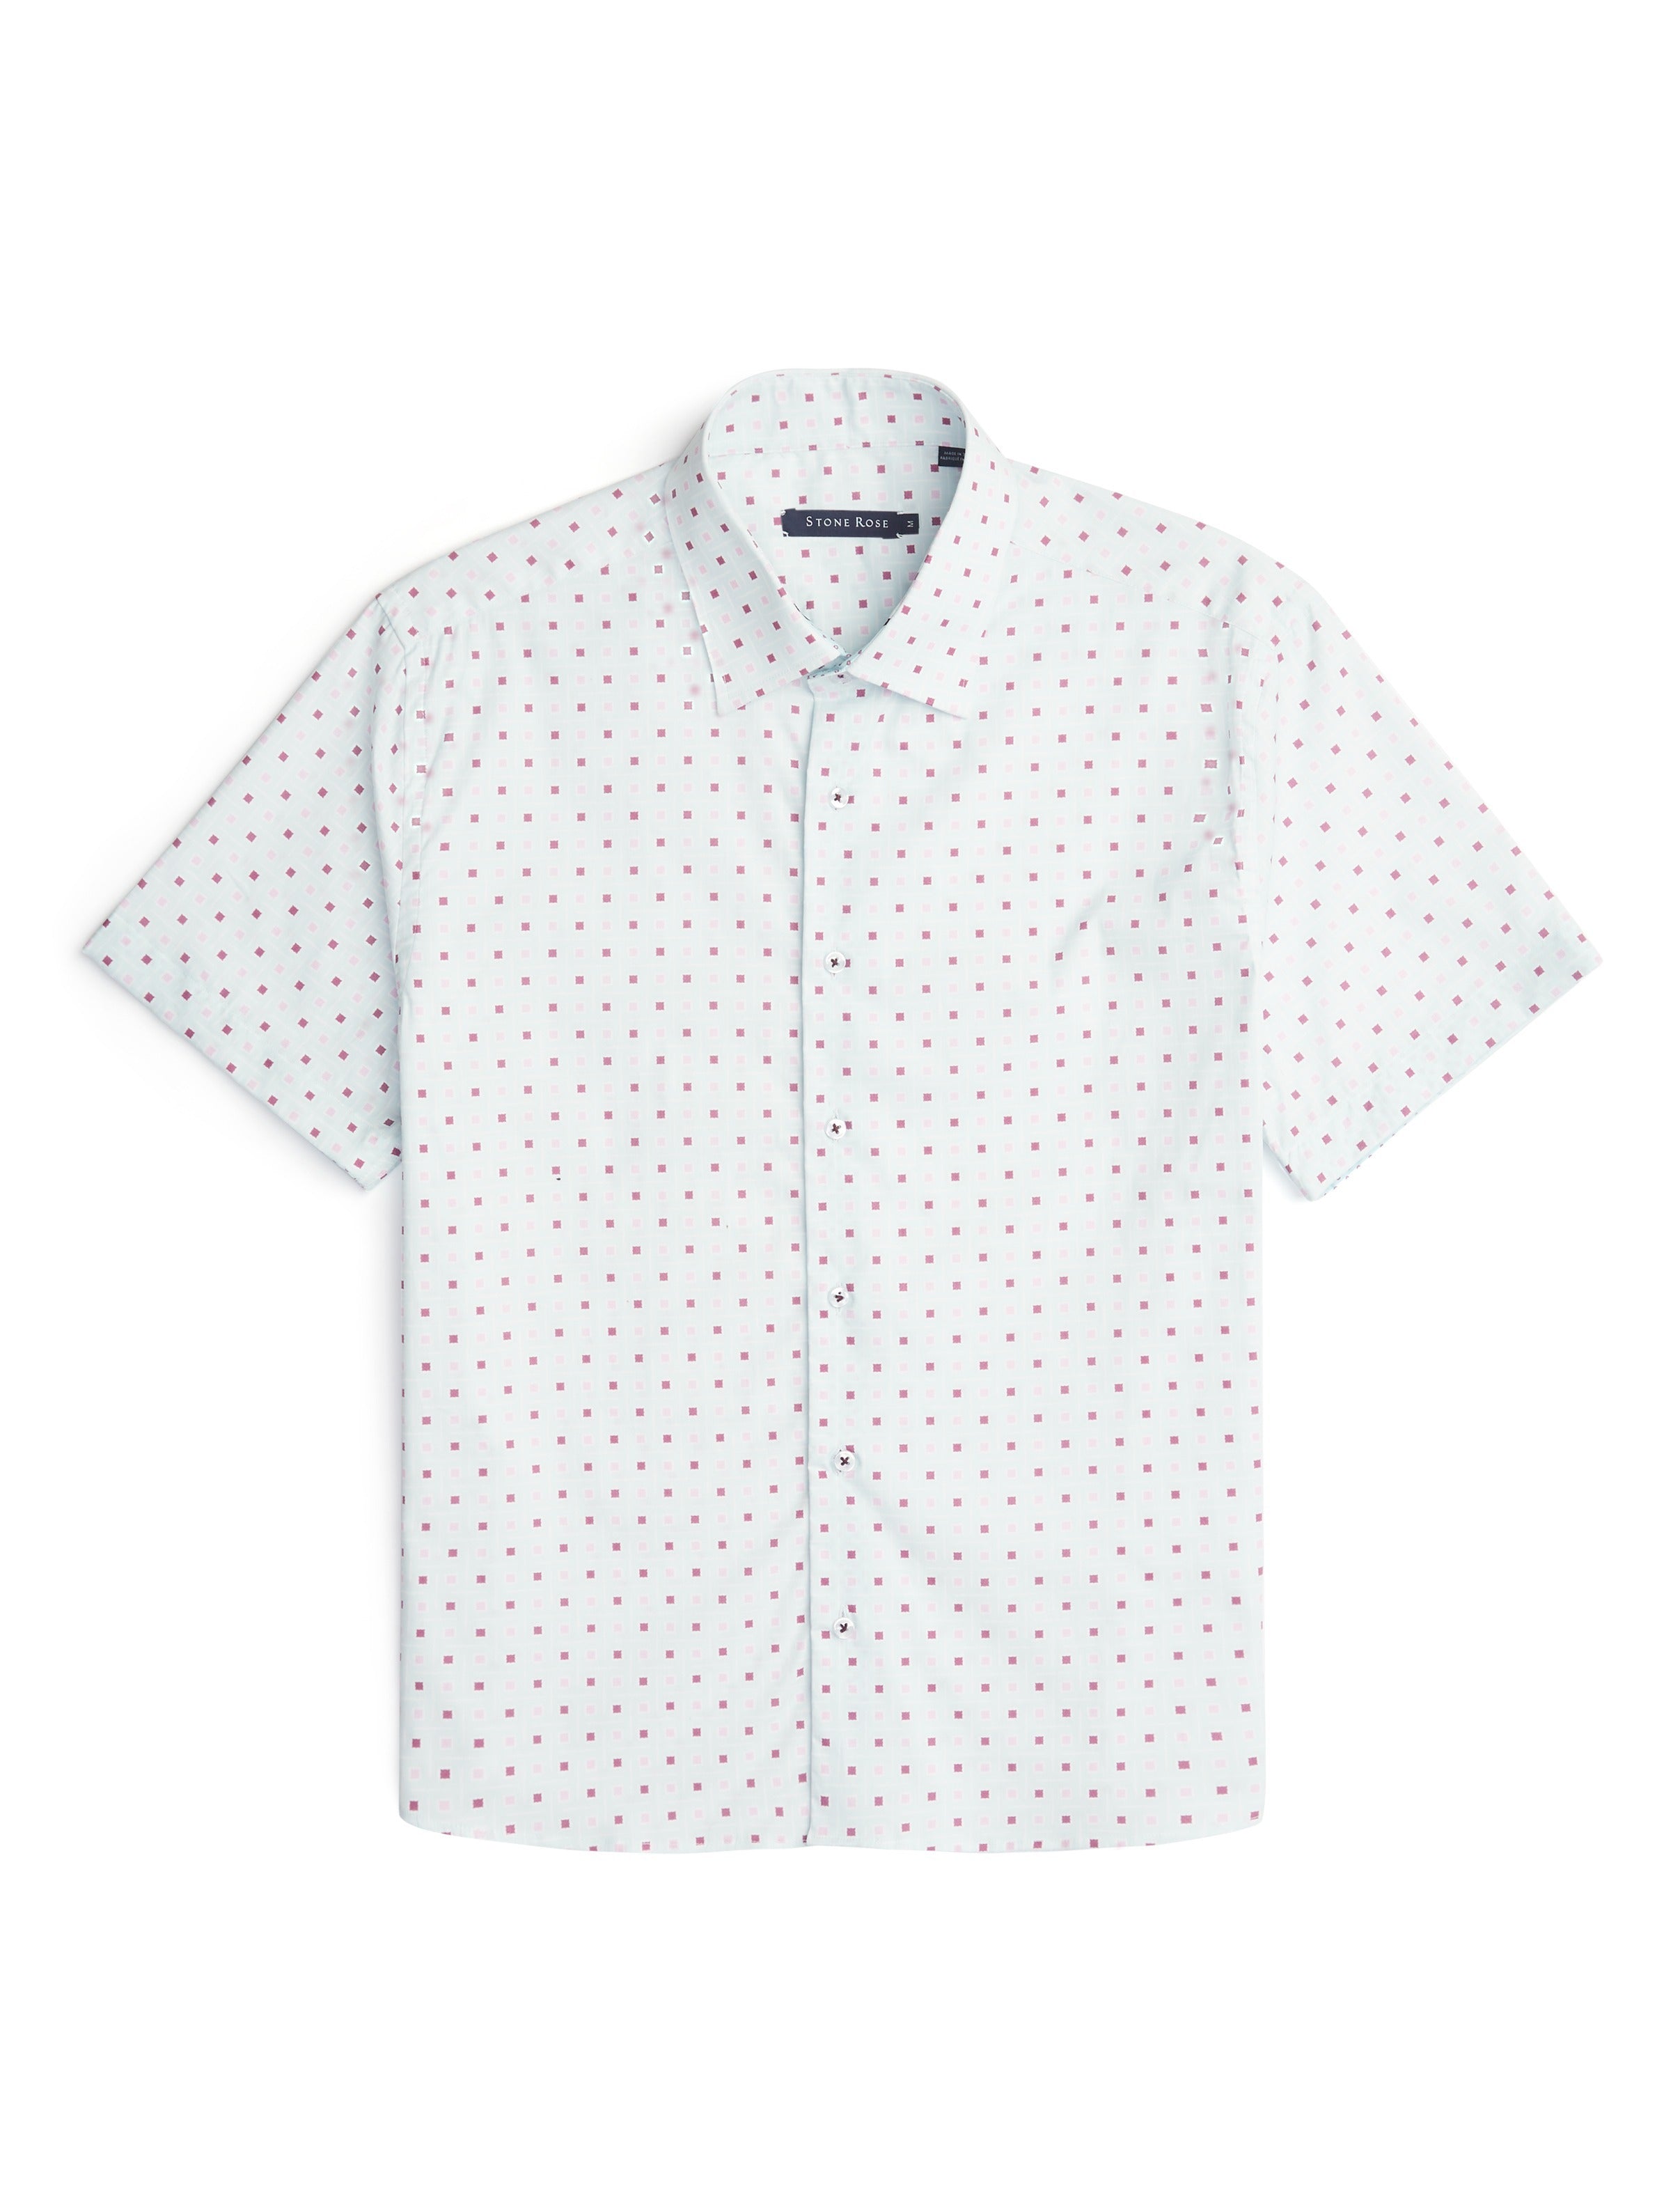 Light Blue Geometric Square Short Sleeve Shirt